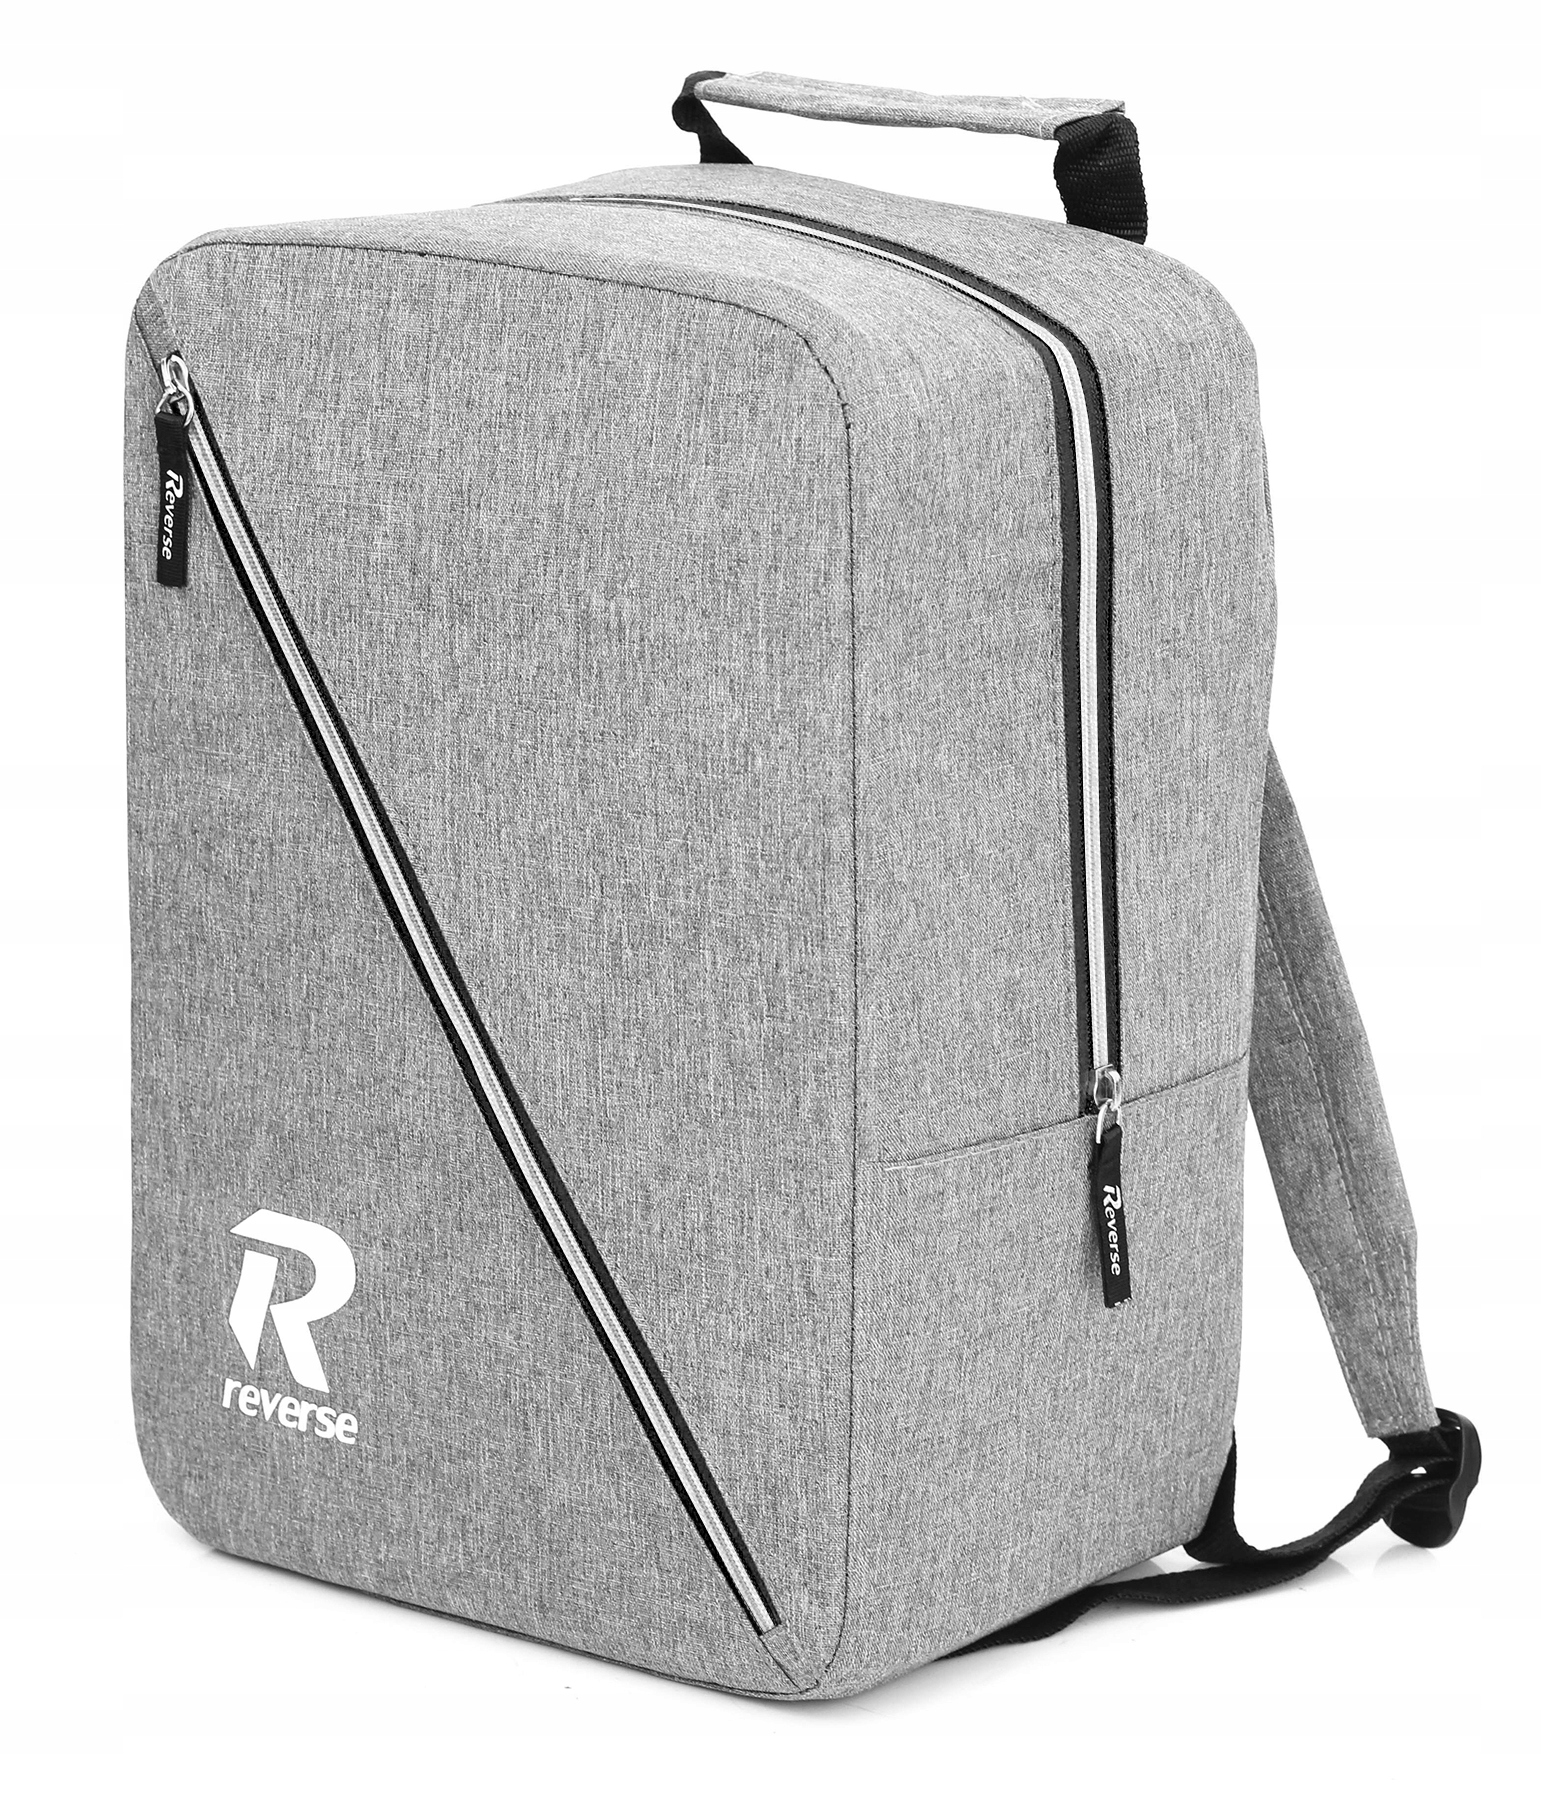 Купить Рюкзак для багажа в самолет 40x20x25 RYANAIR: отзывы, фото и .